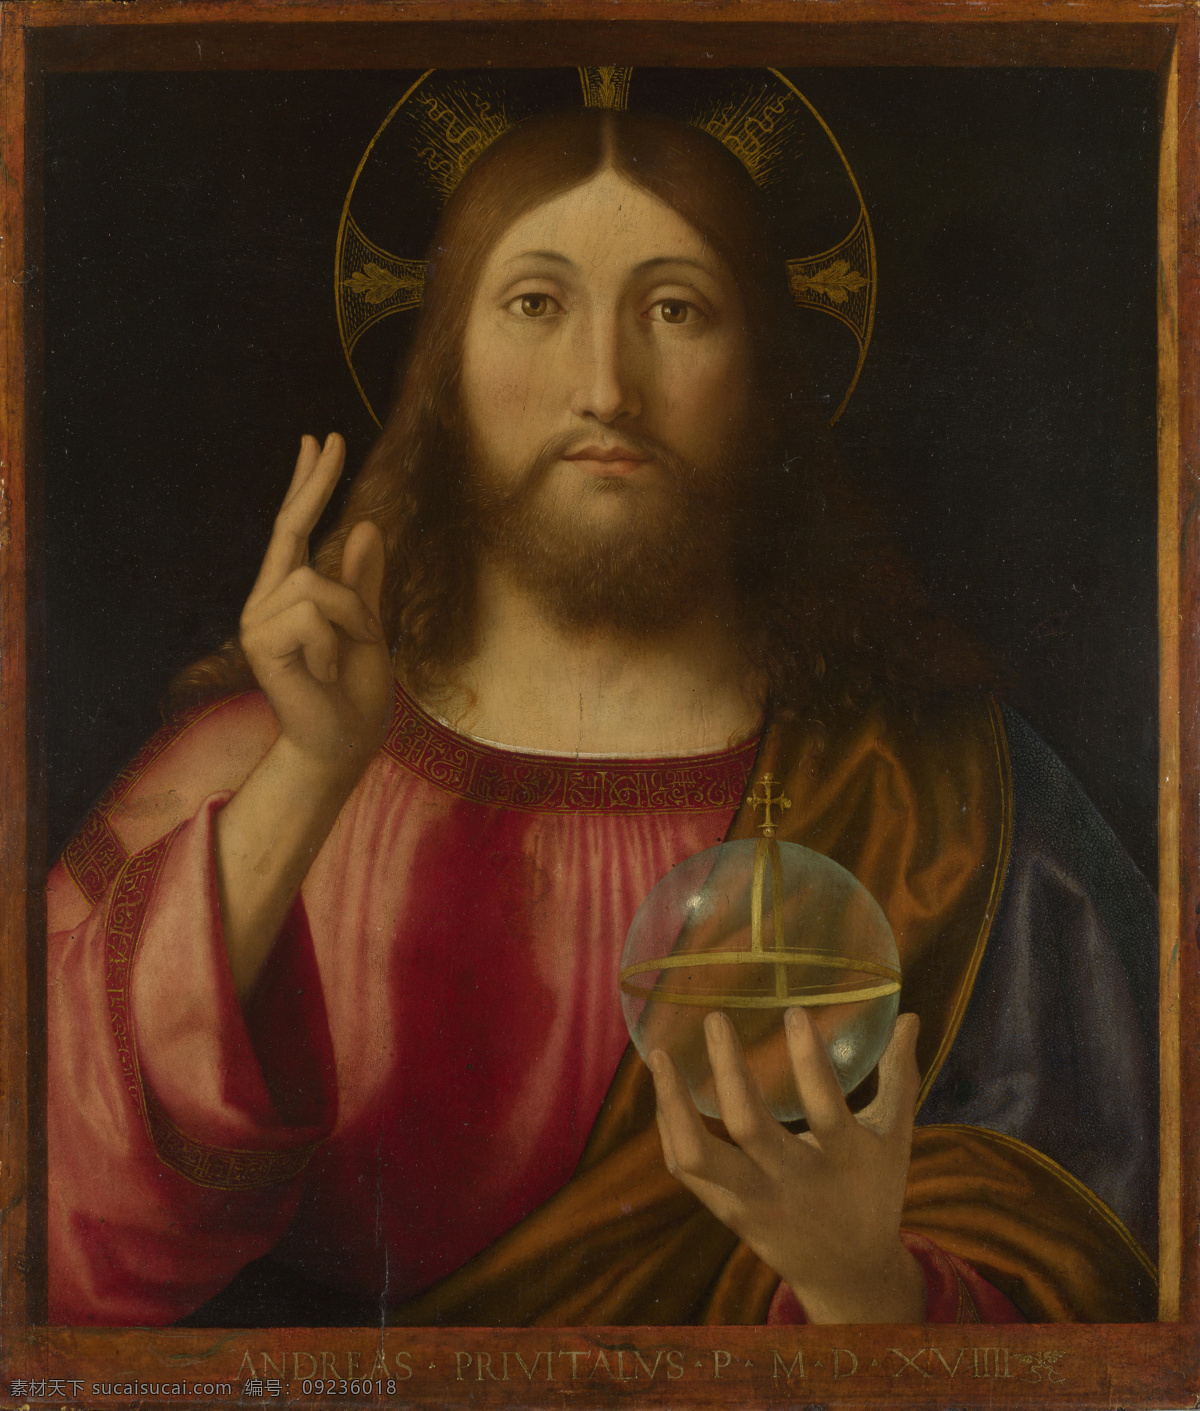 上帝耶稣 世界名画 油画 西方油画 西方文化 绘画艺术 基督教 宗教绘画 上帝 耶稣 祷告 书画文字 文化艺术 黑色